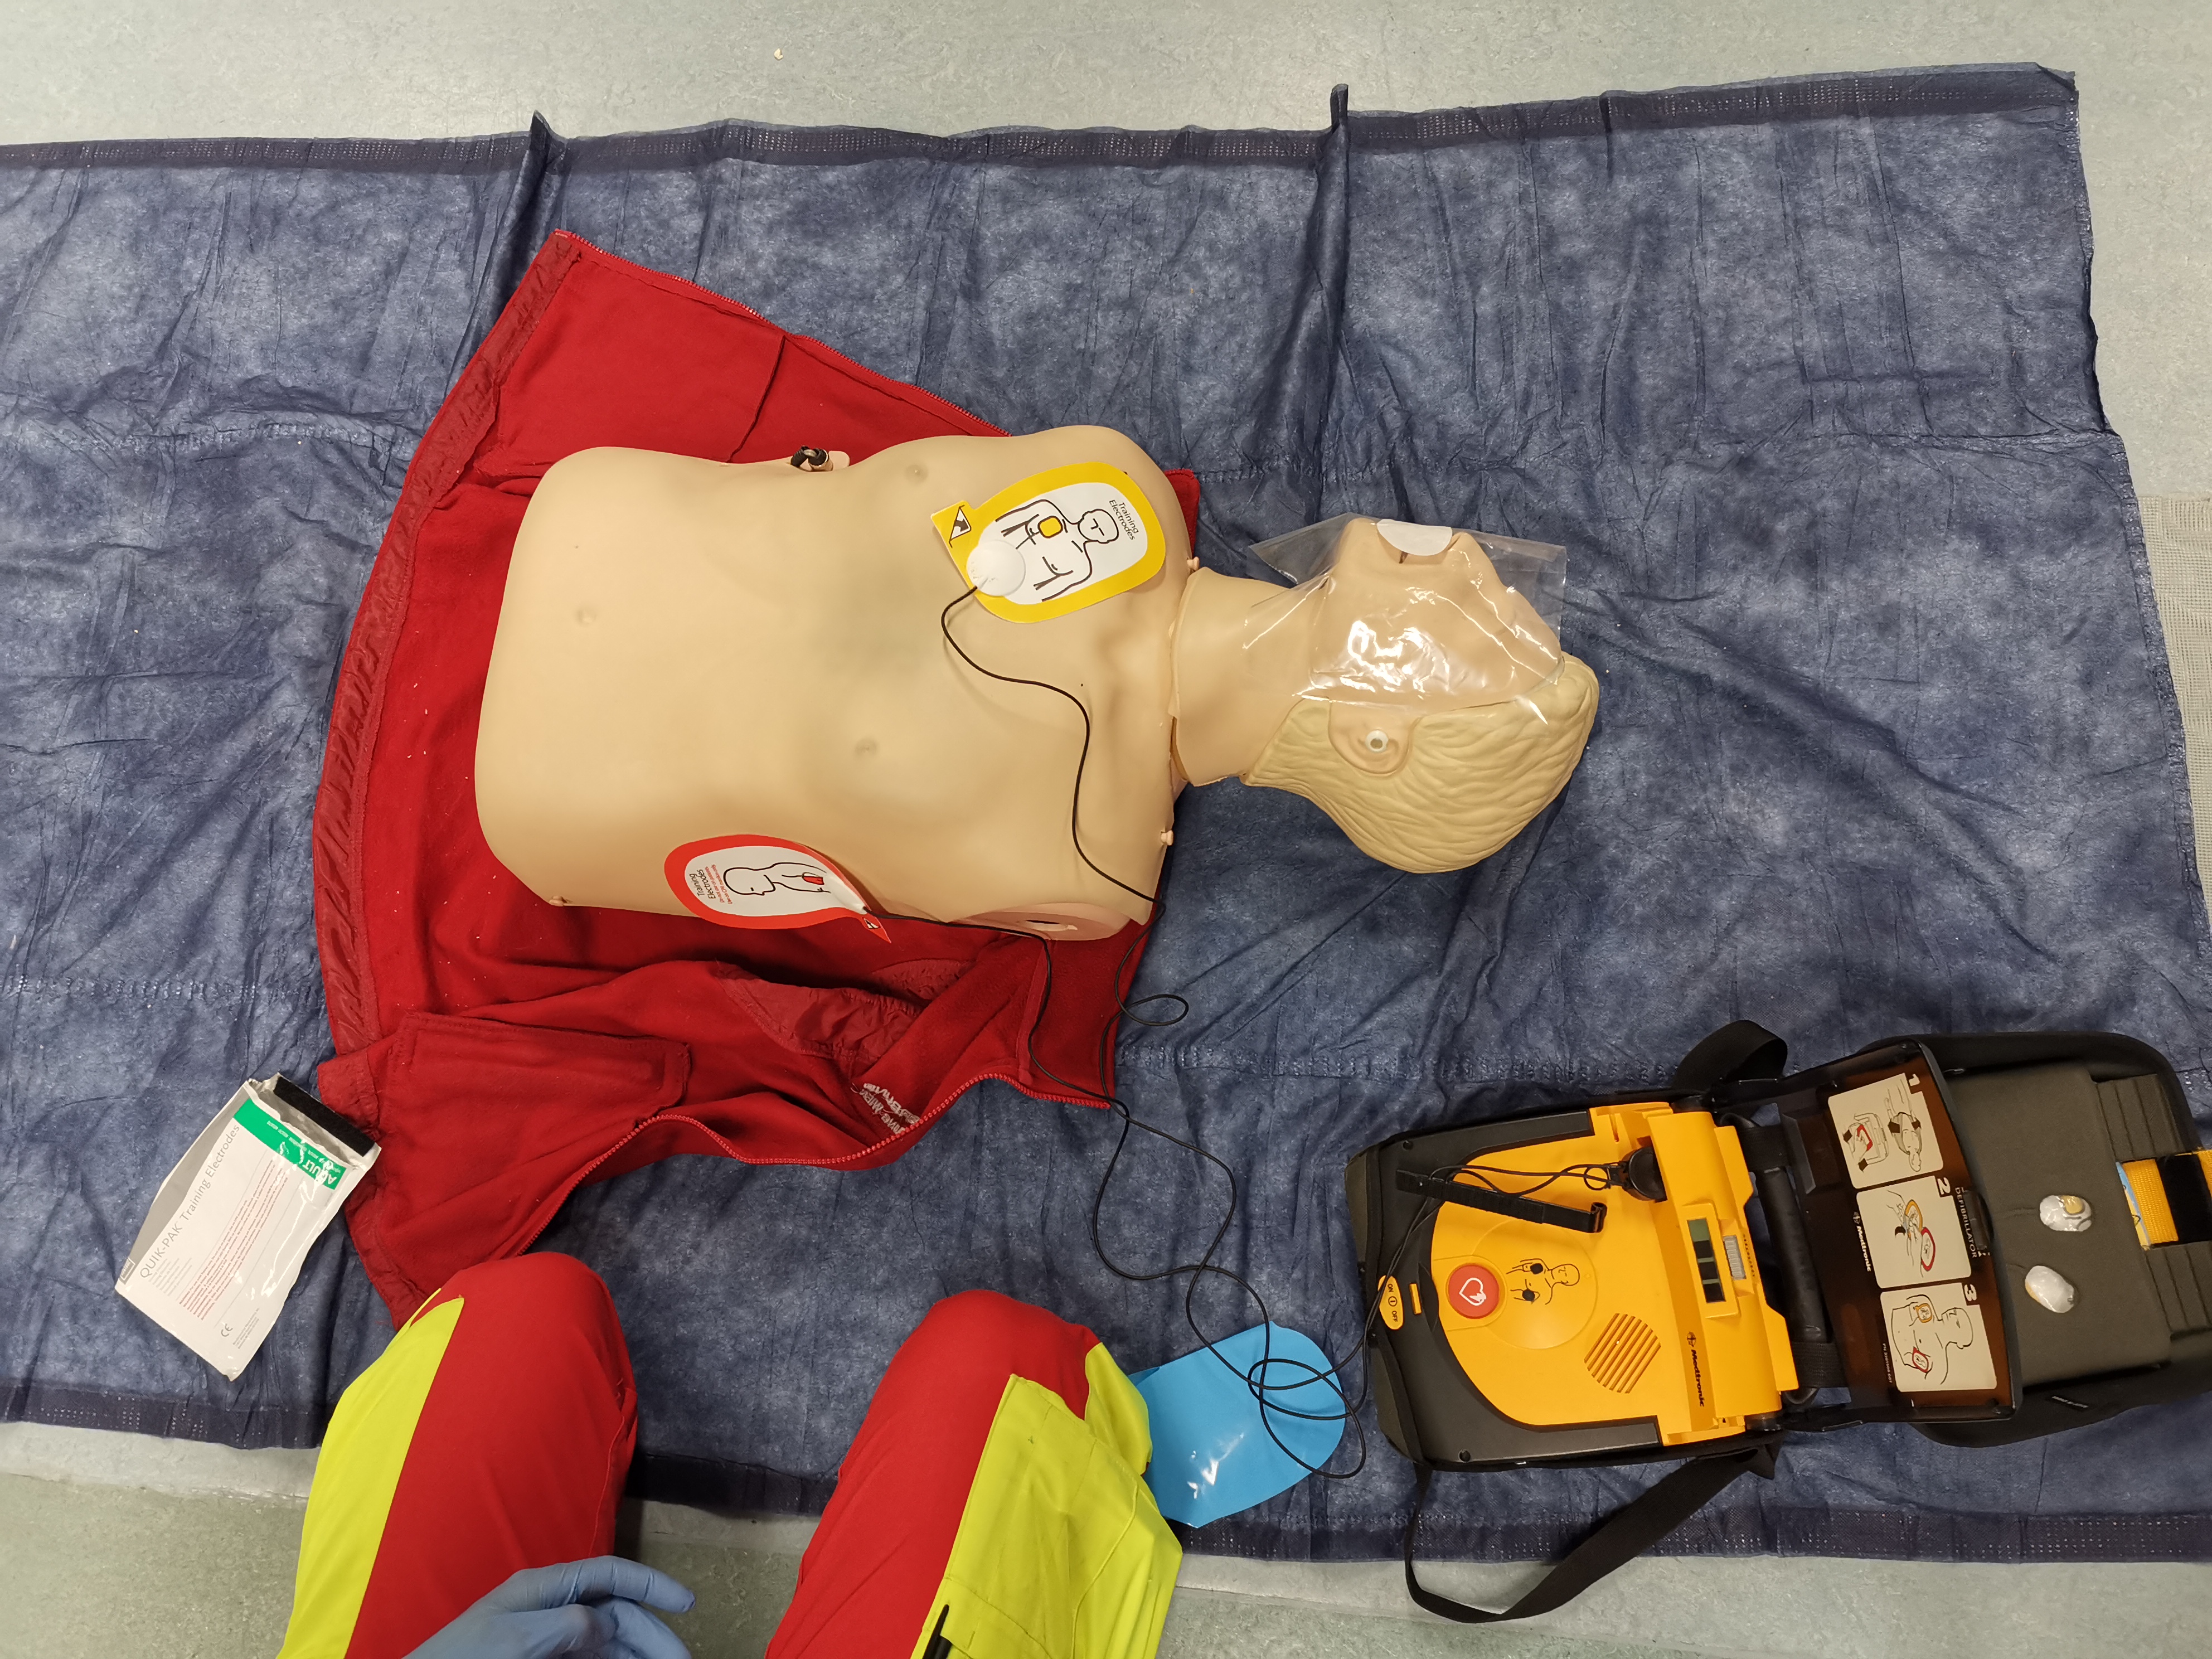 Das ist ein Defibrilator und eine Puppe zum Vorzeigen, wie man wiederbelebt. 